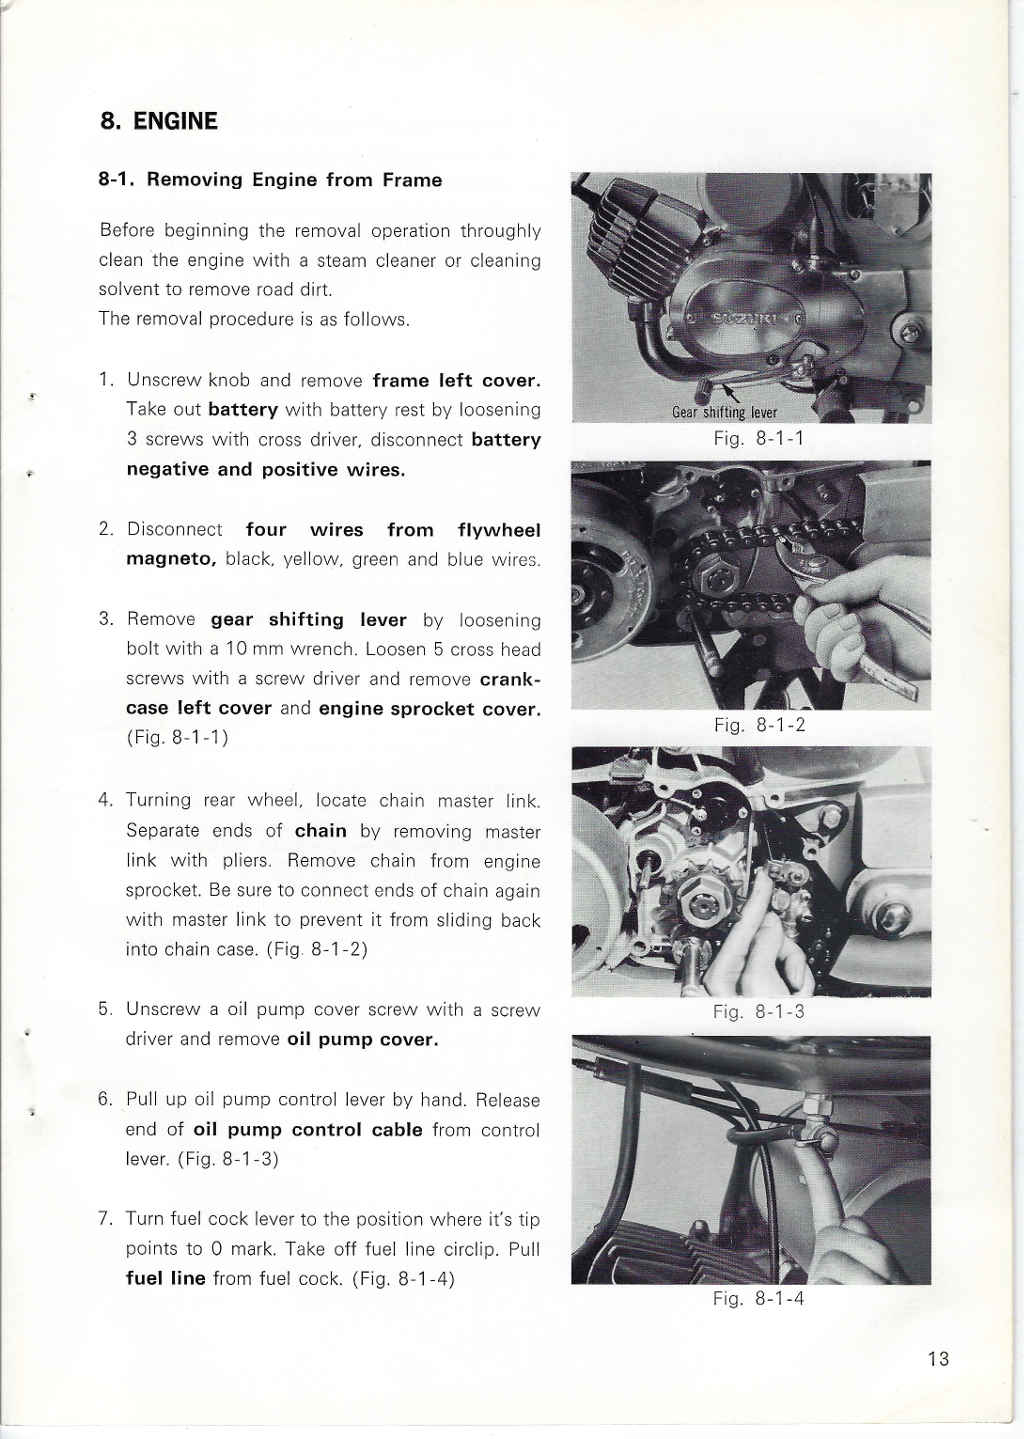 Manual de servicio Suzuki A100 1966-1976